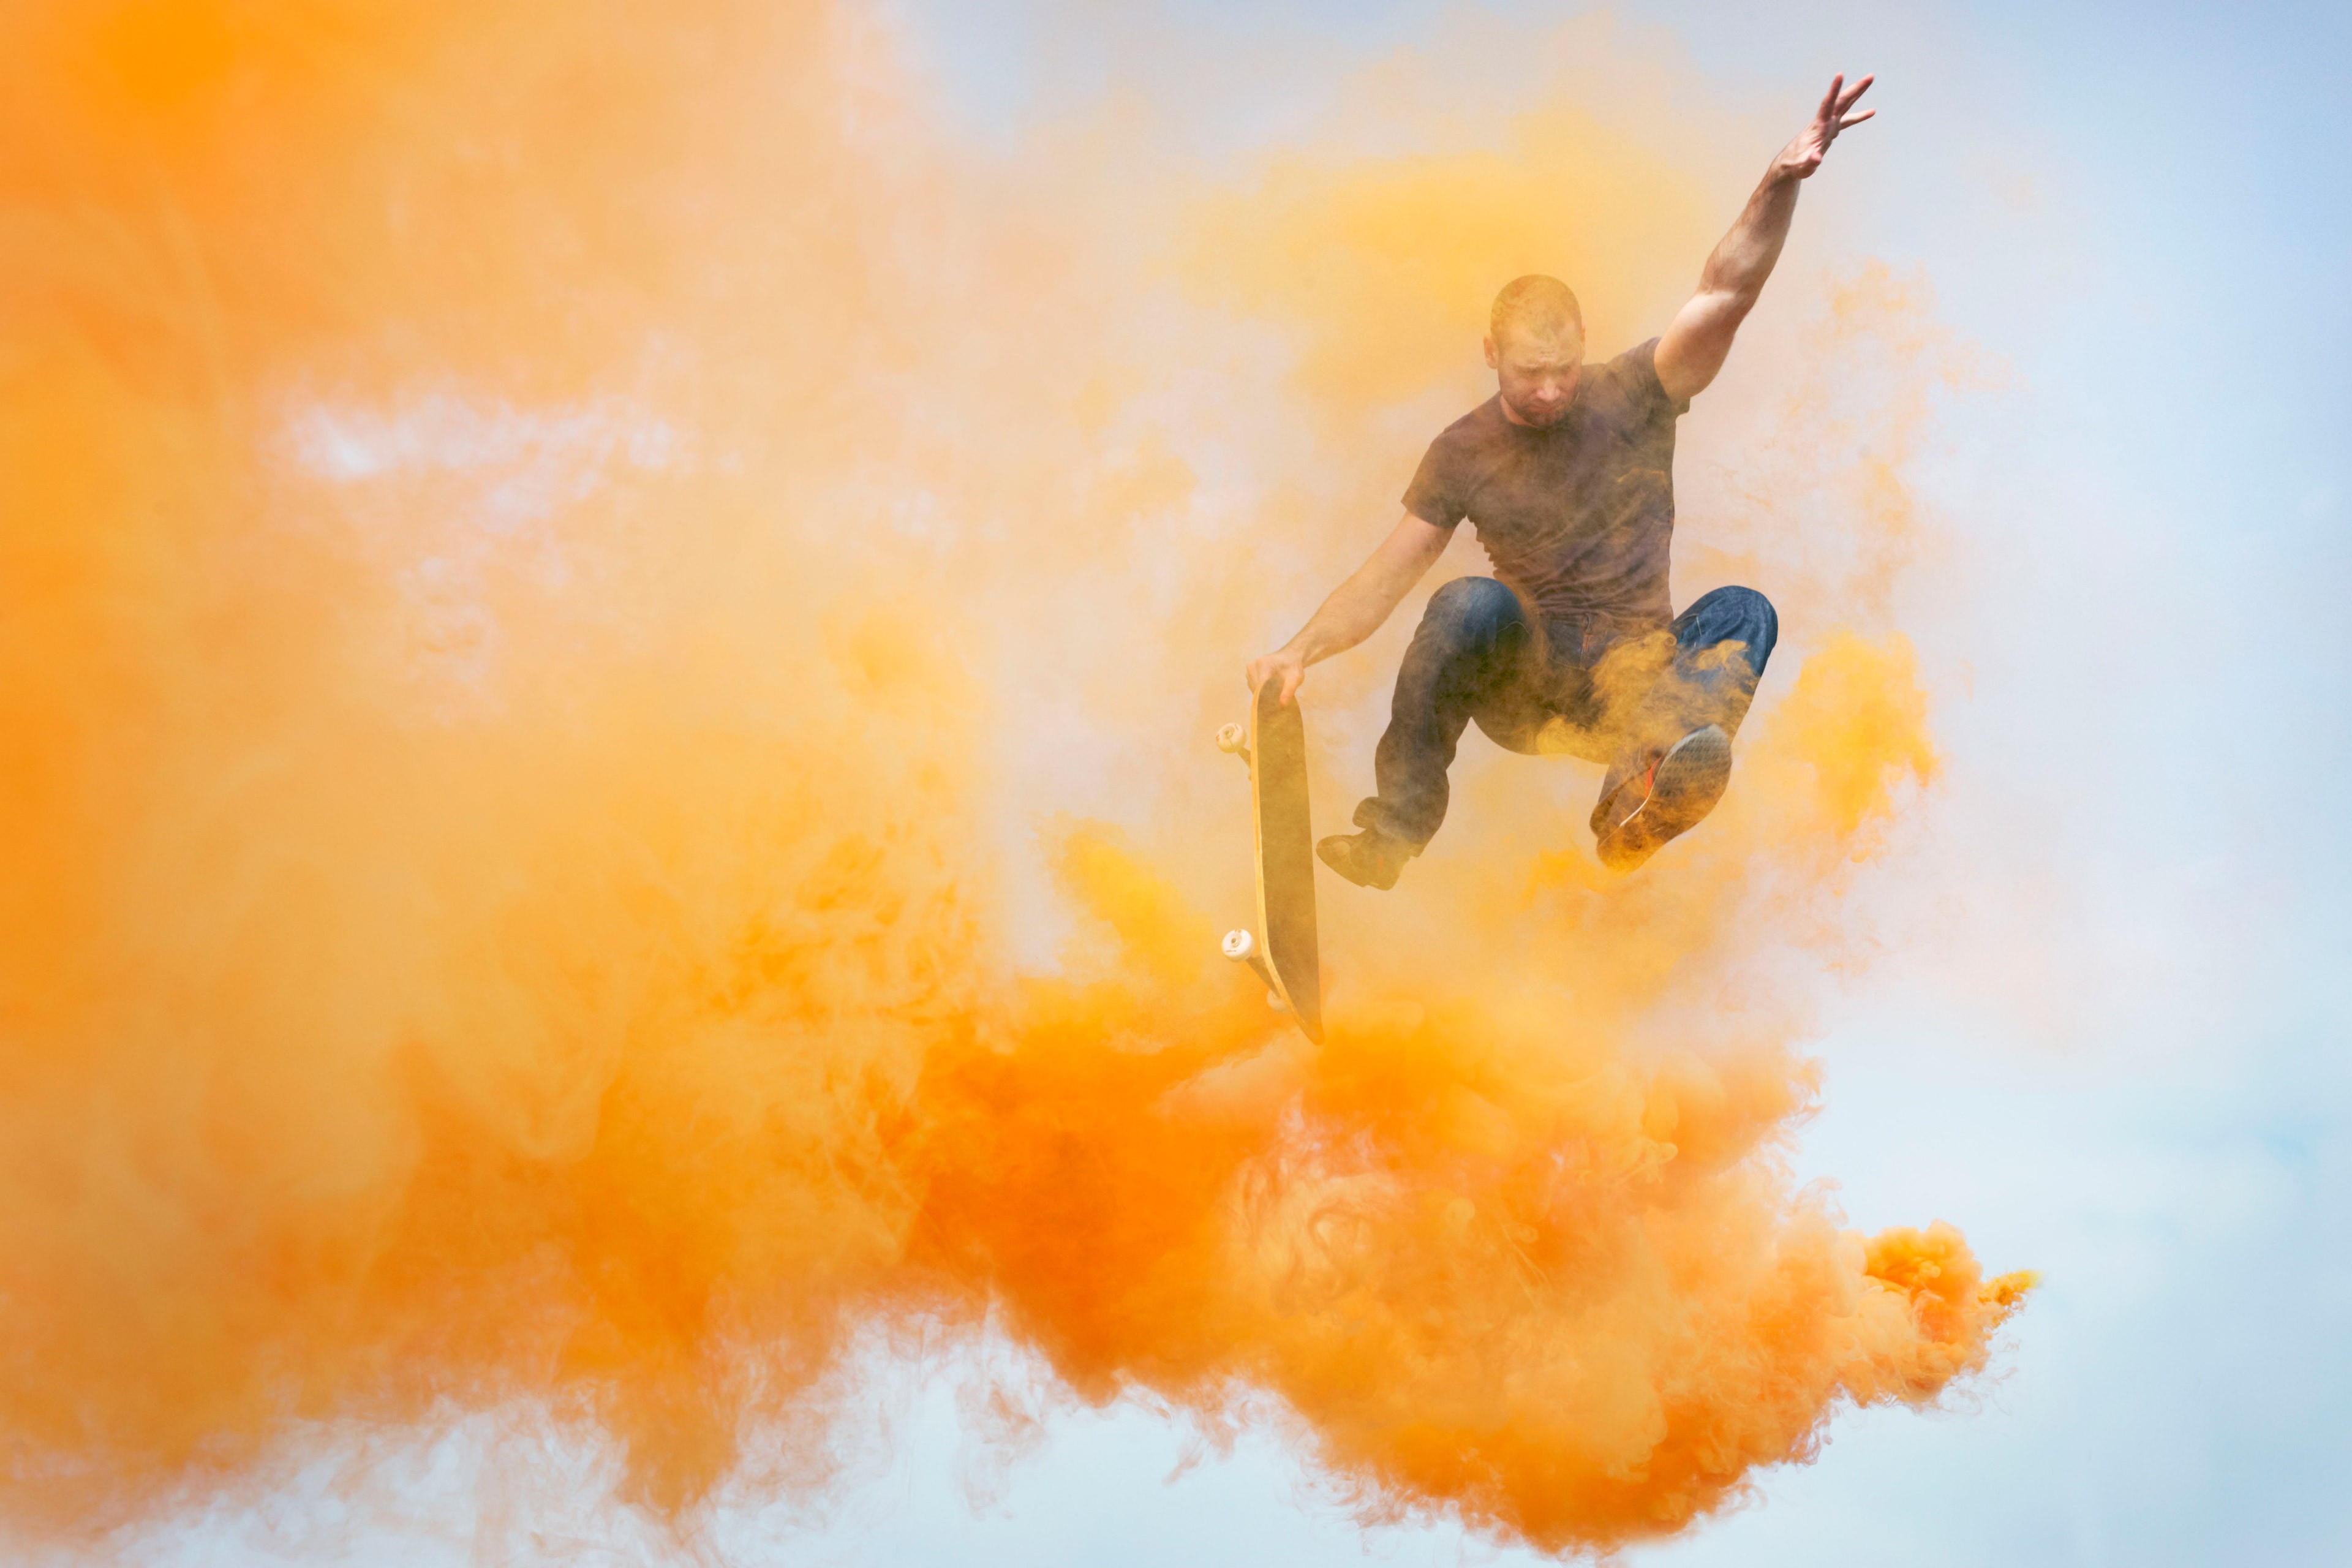 
            homme sautant à travers une fumée orange avec un skateboard
        